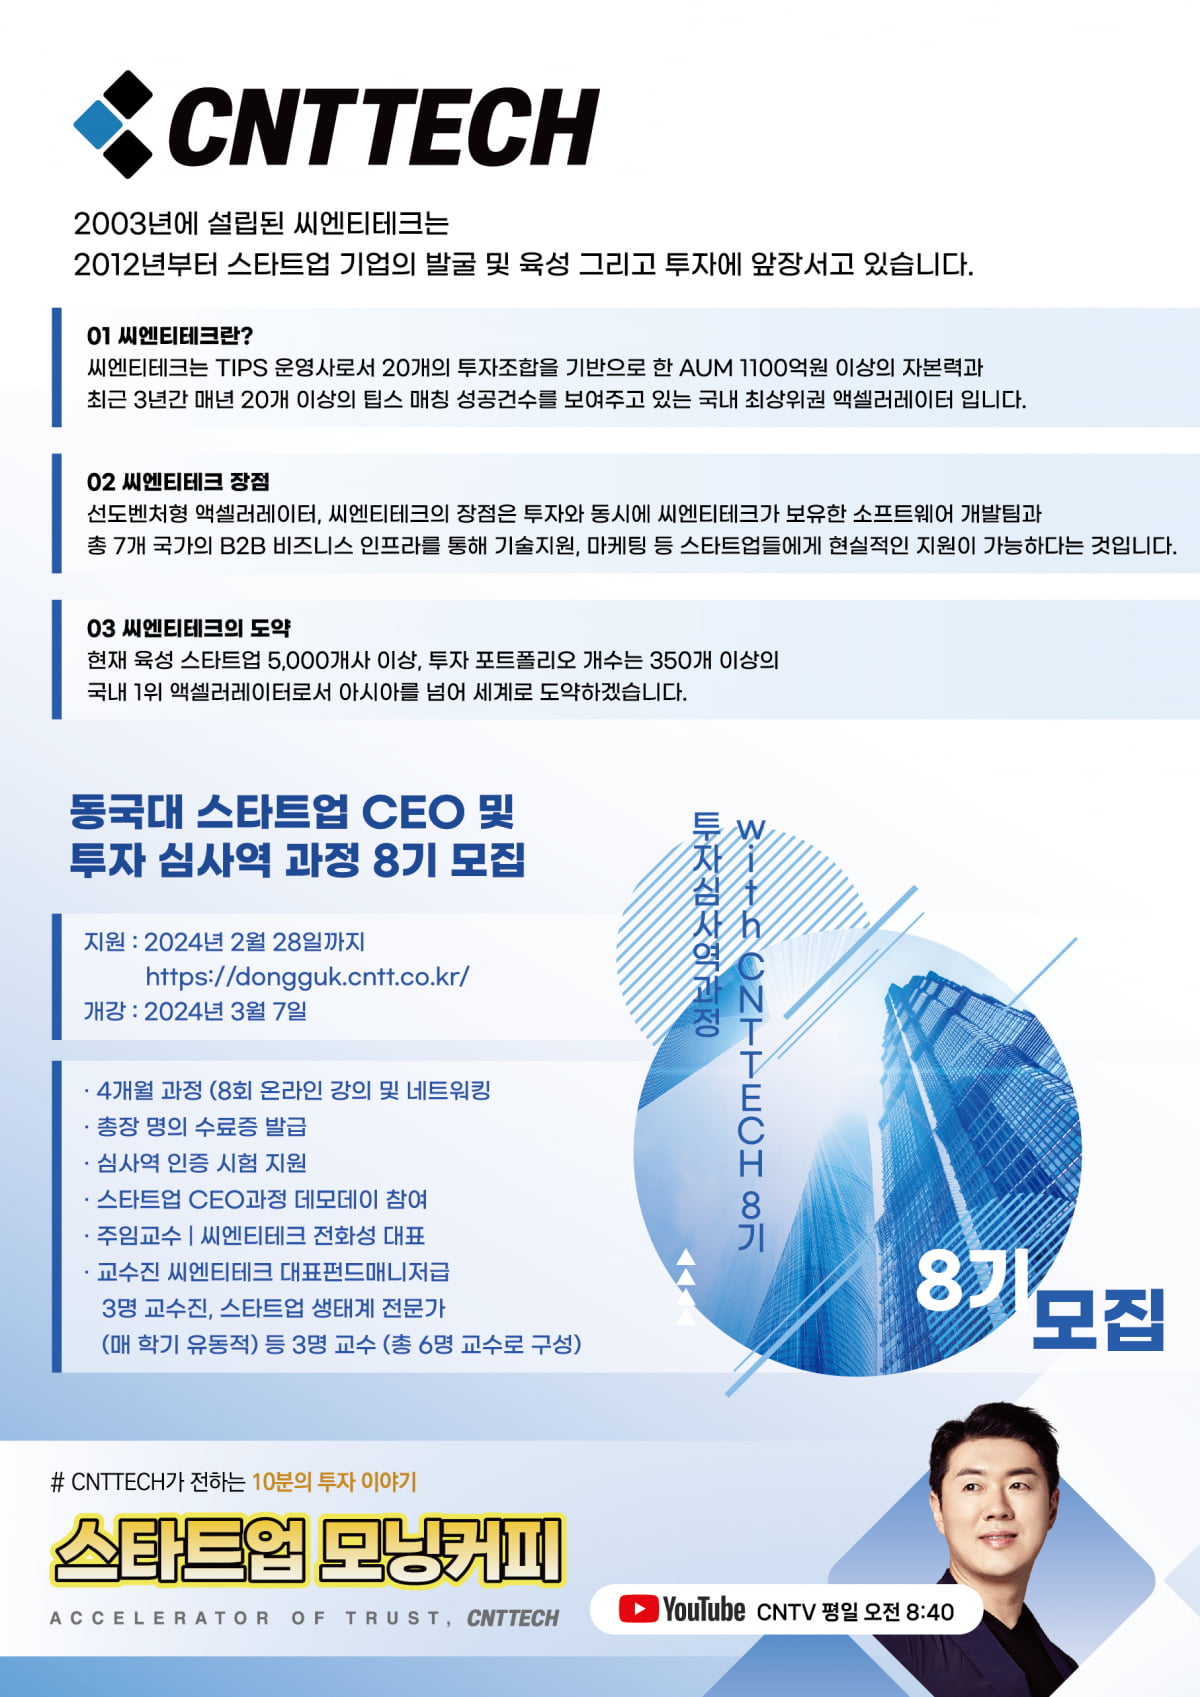 [제2서울핀테크랩 스타트업 CEO] 팬덤 어플리케이션 ‘굿덕’을 서비스하는 스타트업 ‘폰드메이커스’